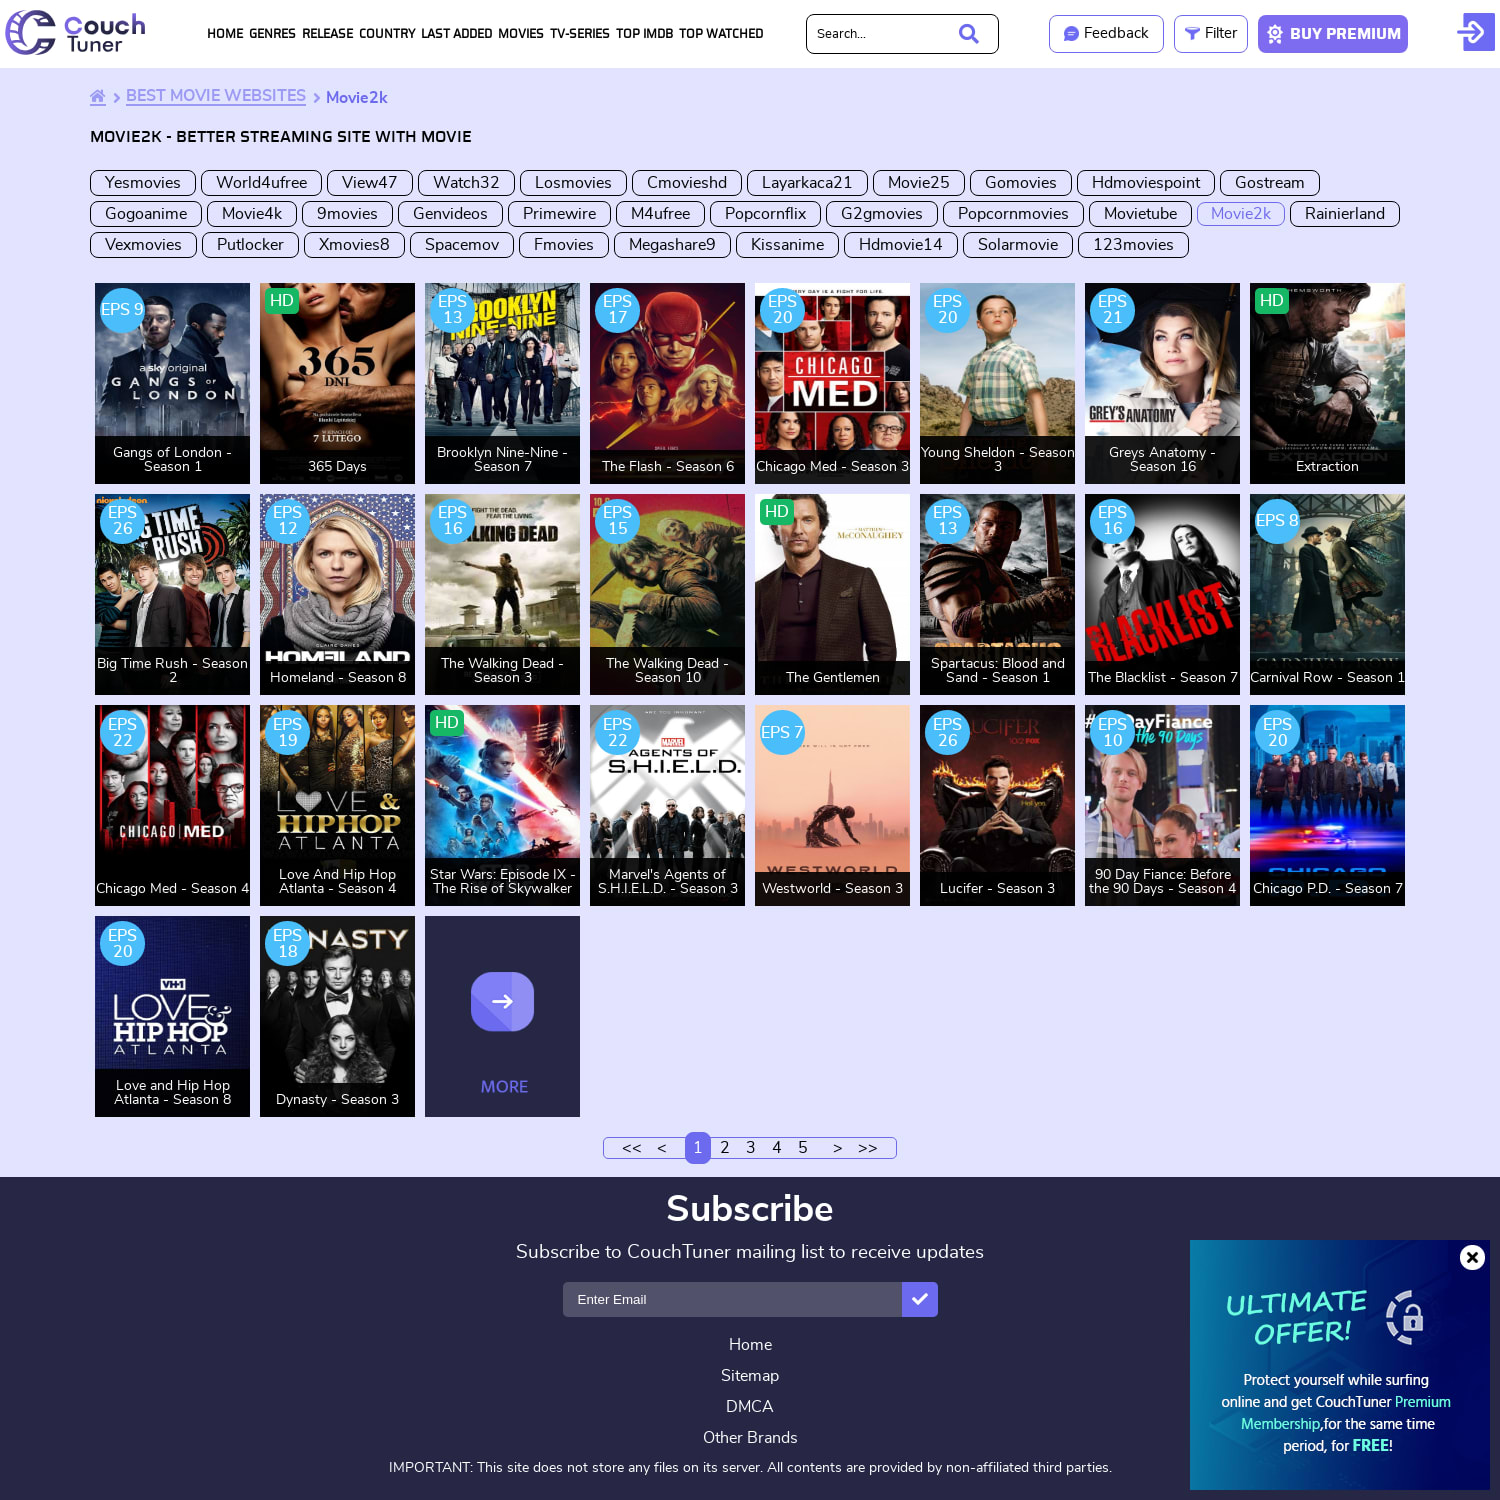 mix-movie2k-free-movies-online